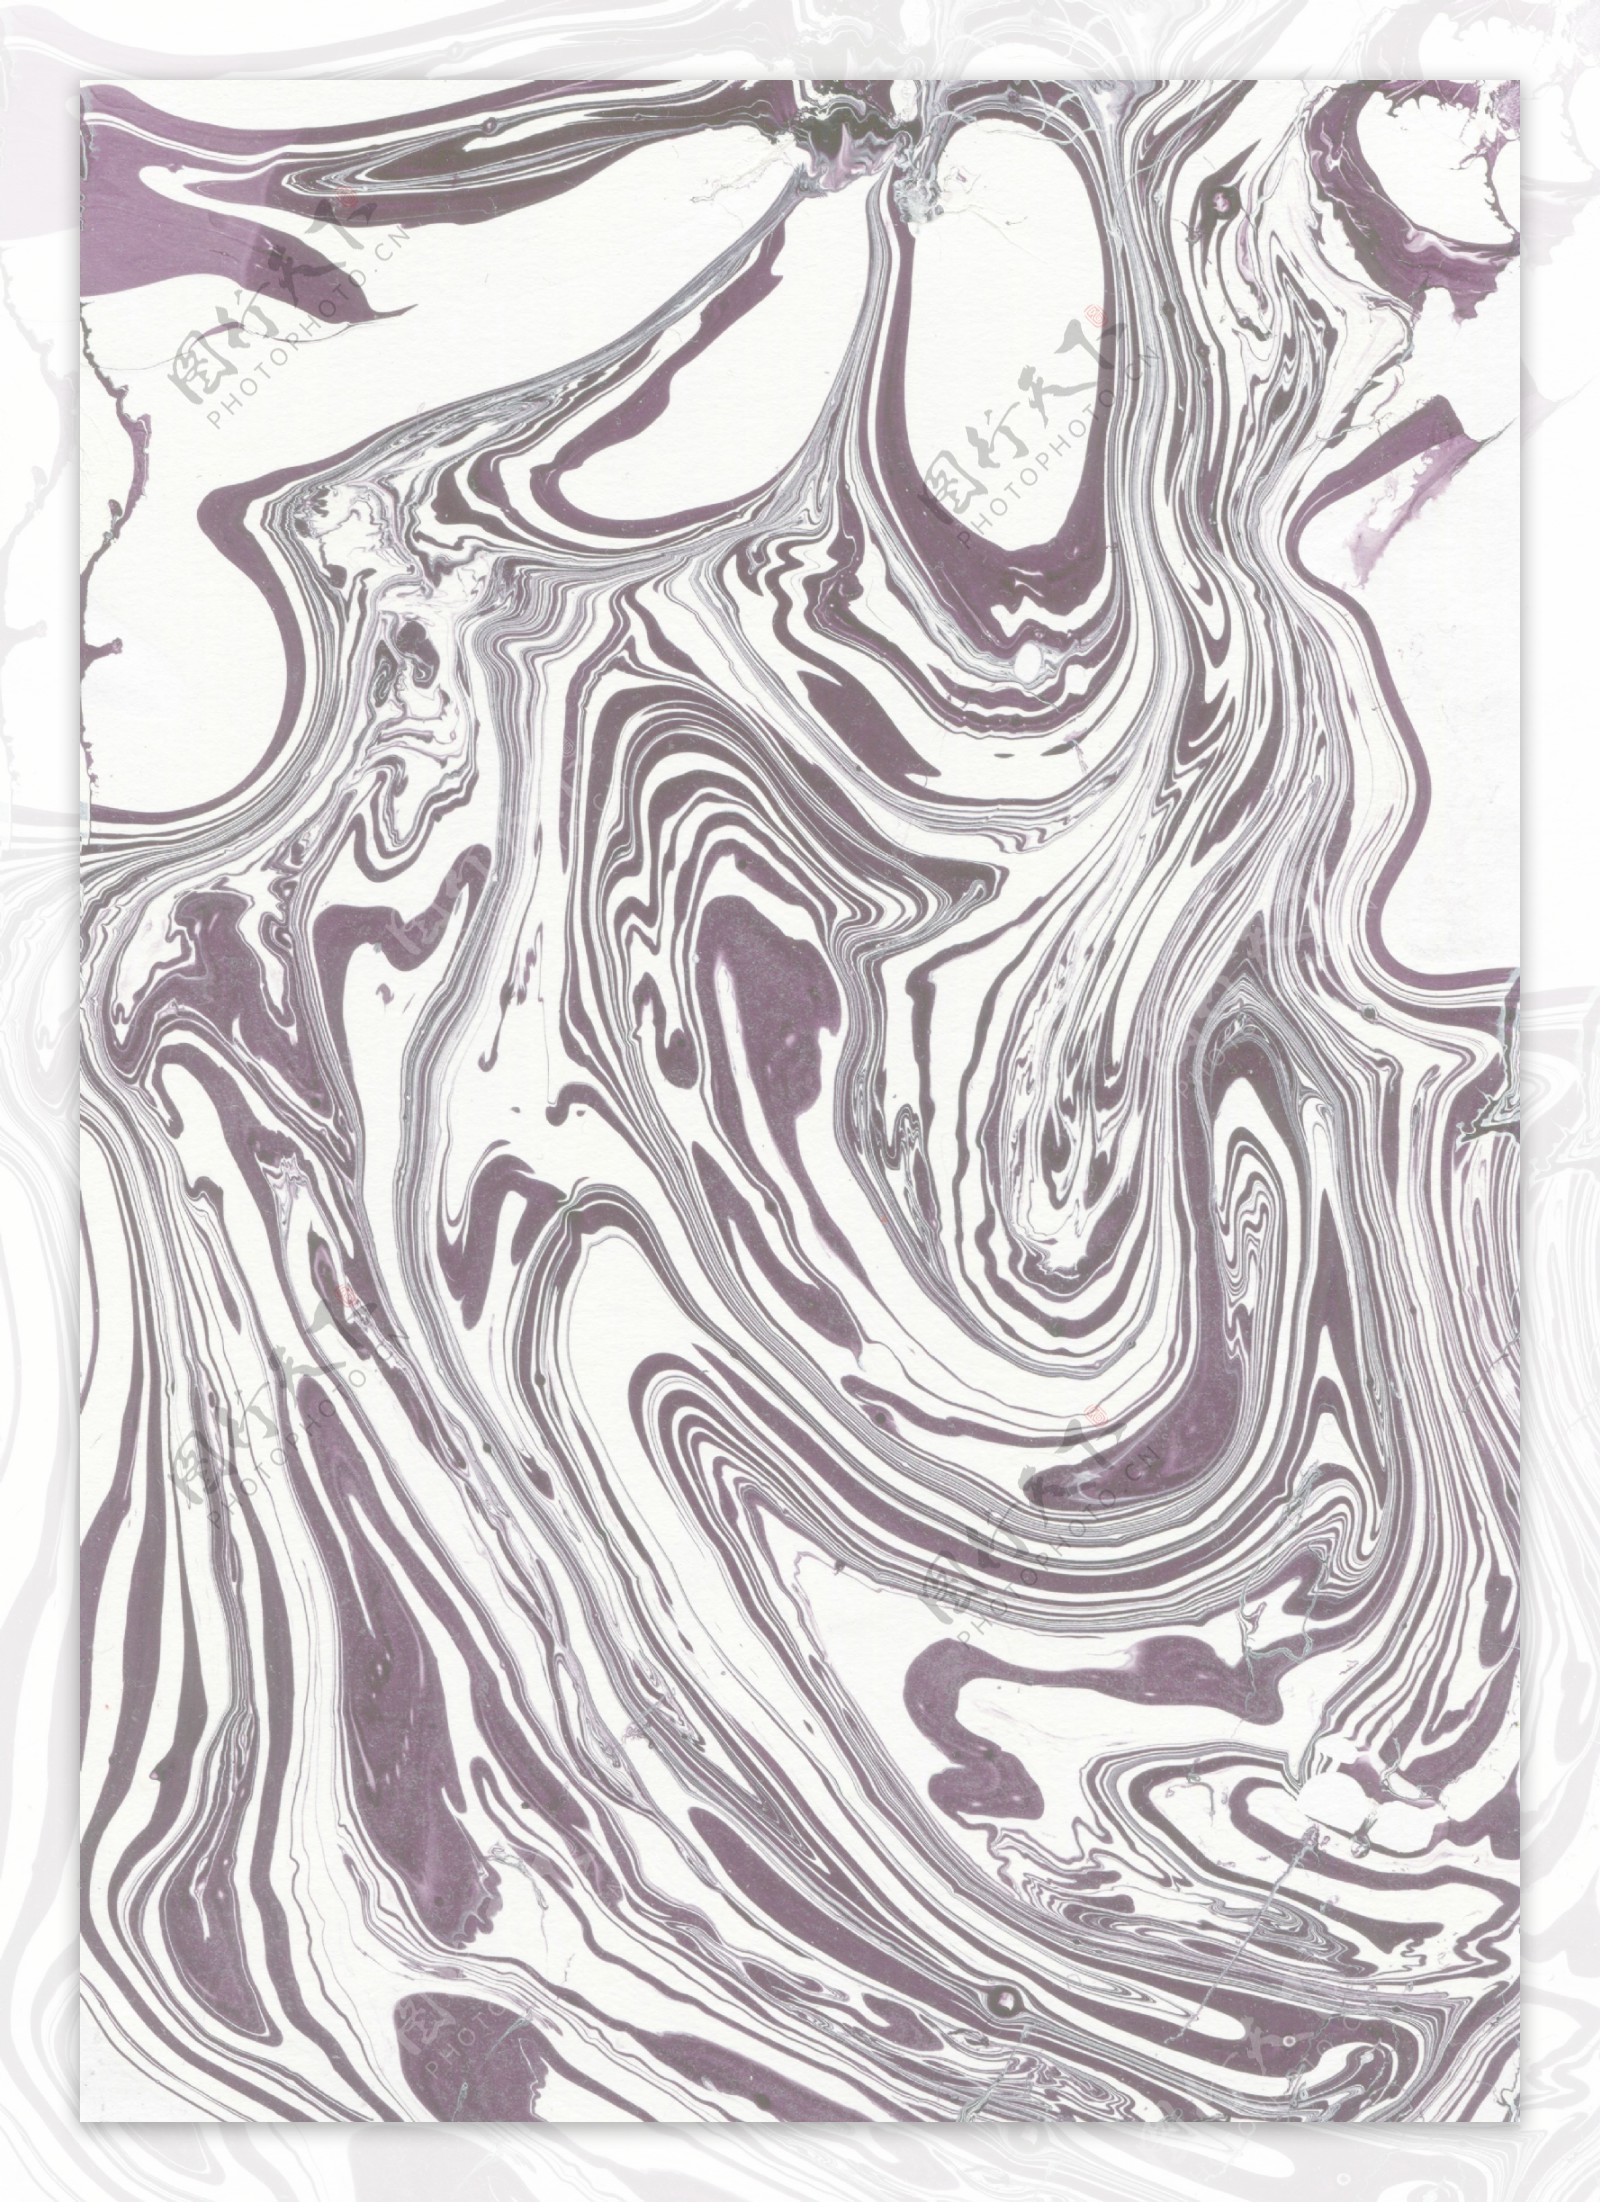 冷酷闷骚灰紫色河流形状壁纸图案装饰设计